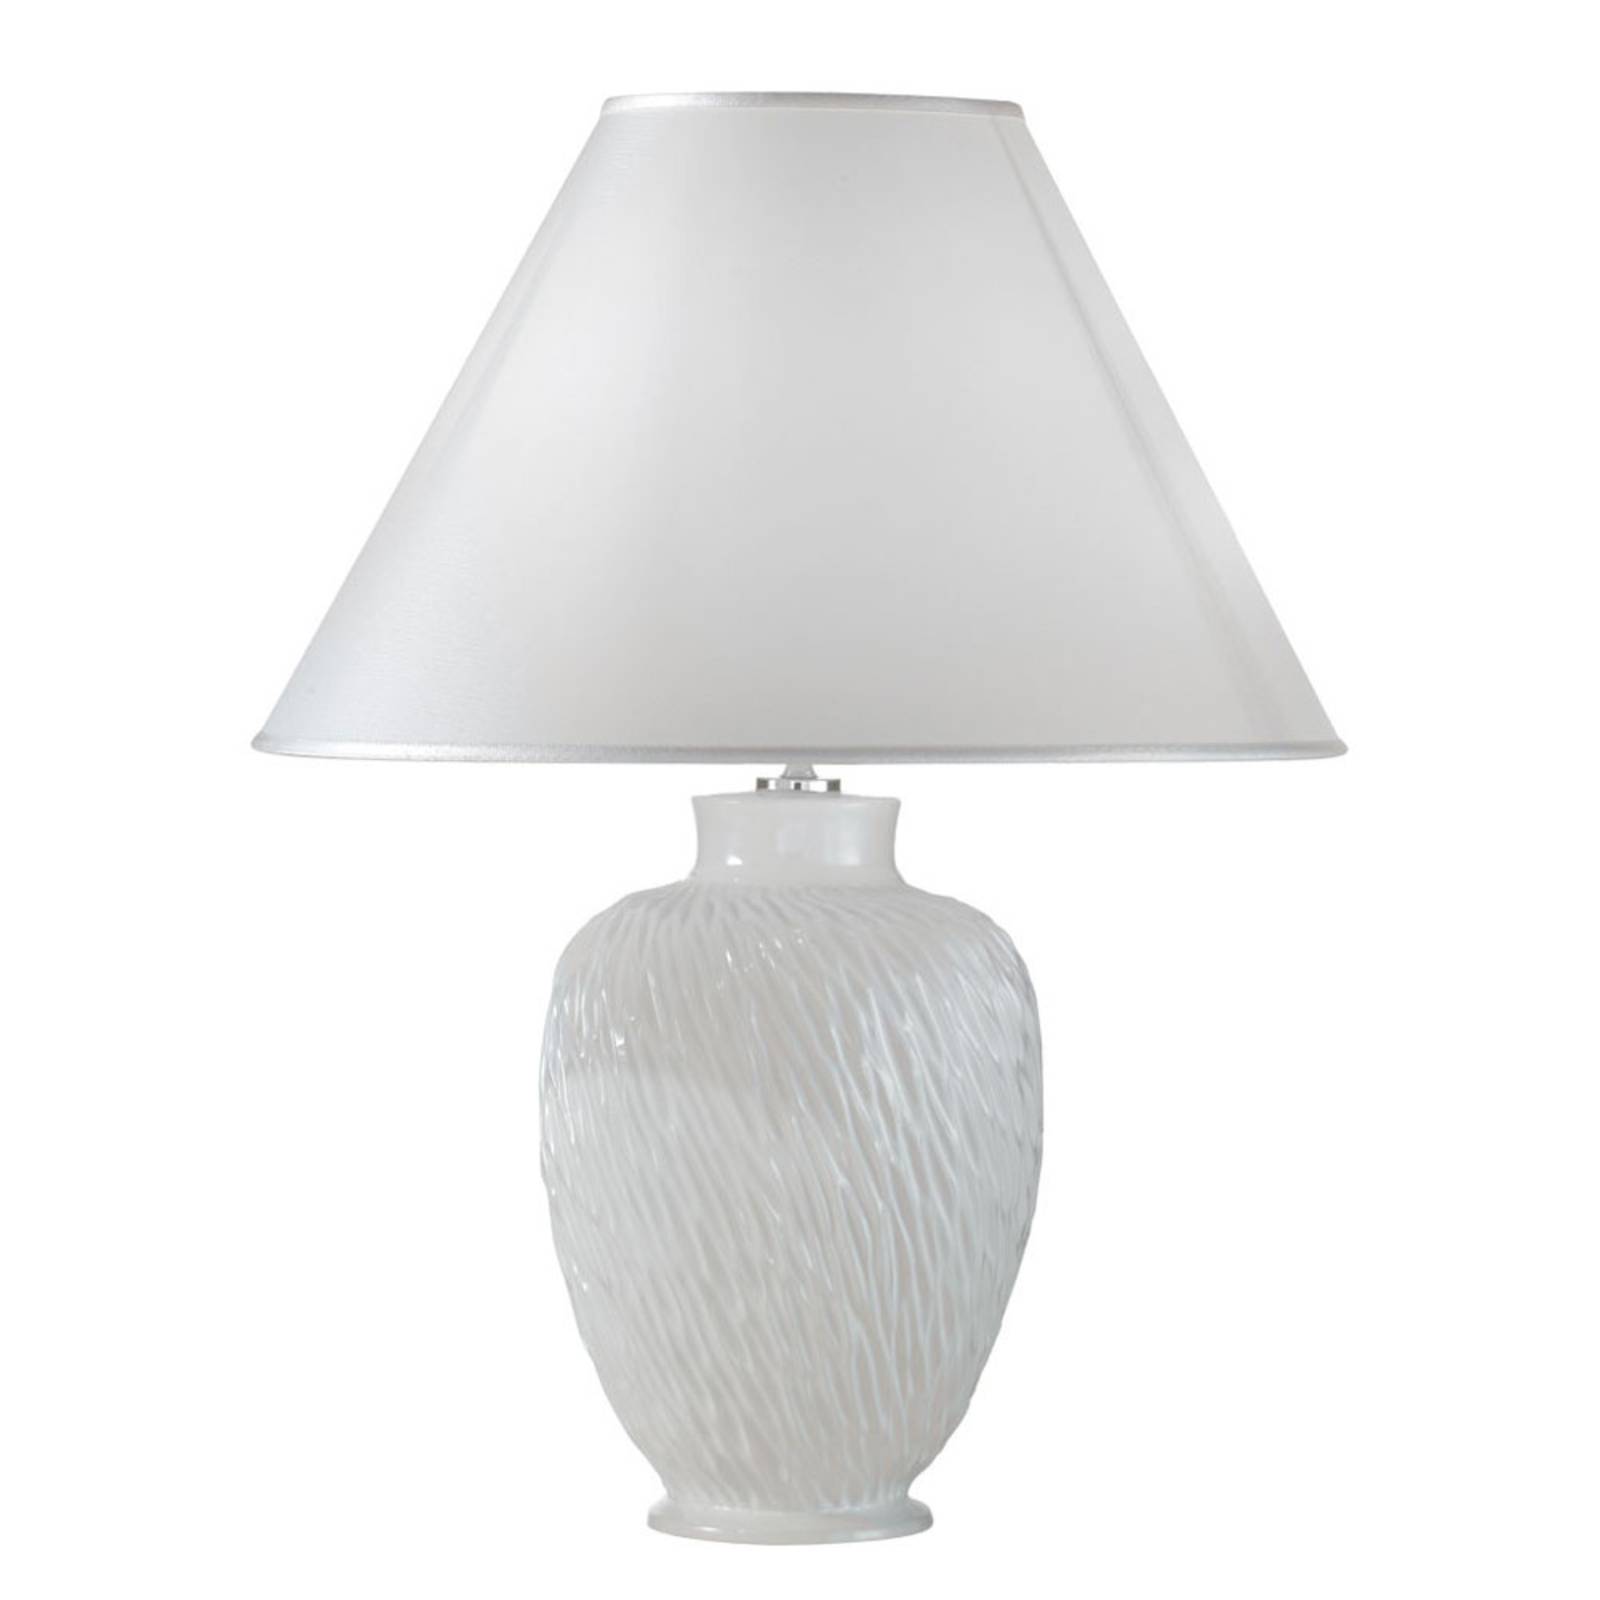 Asztali lámpa Chiara kerámia, fehér, Ø40 cm